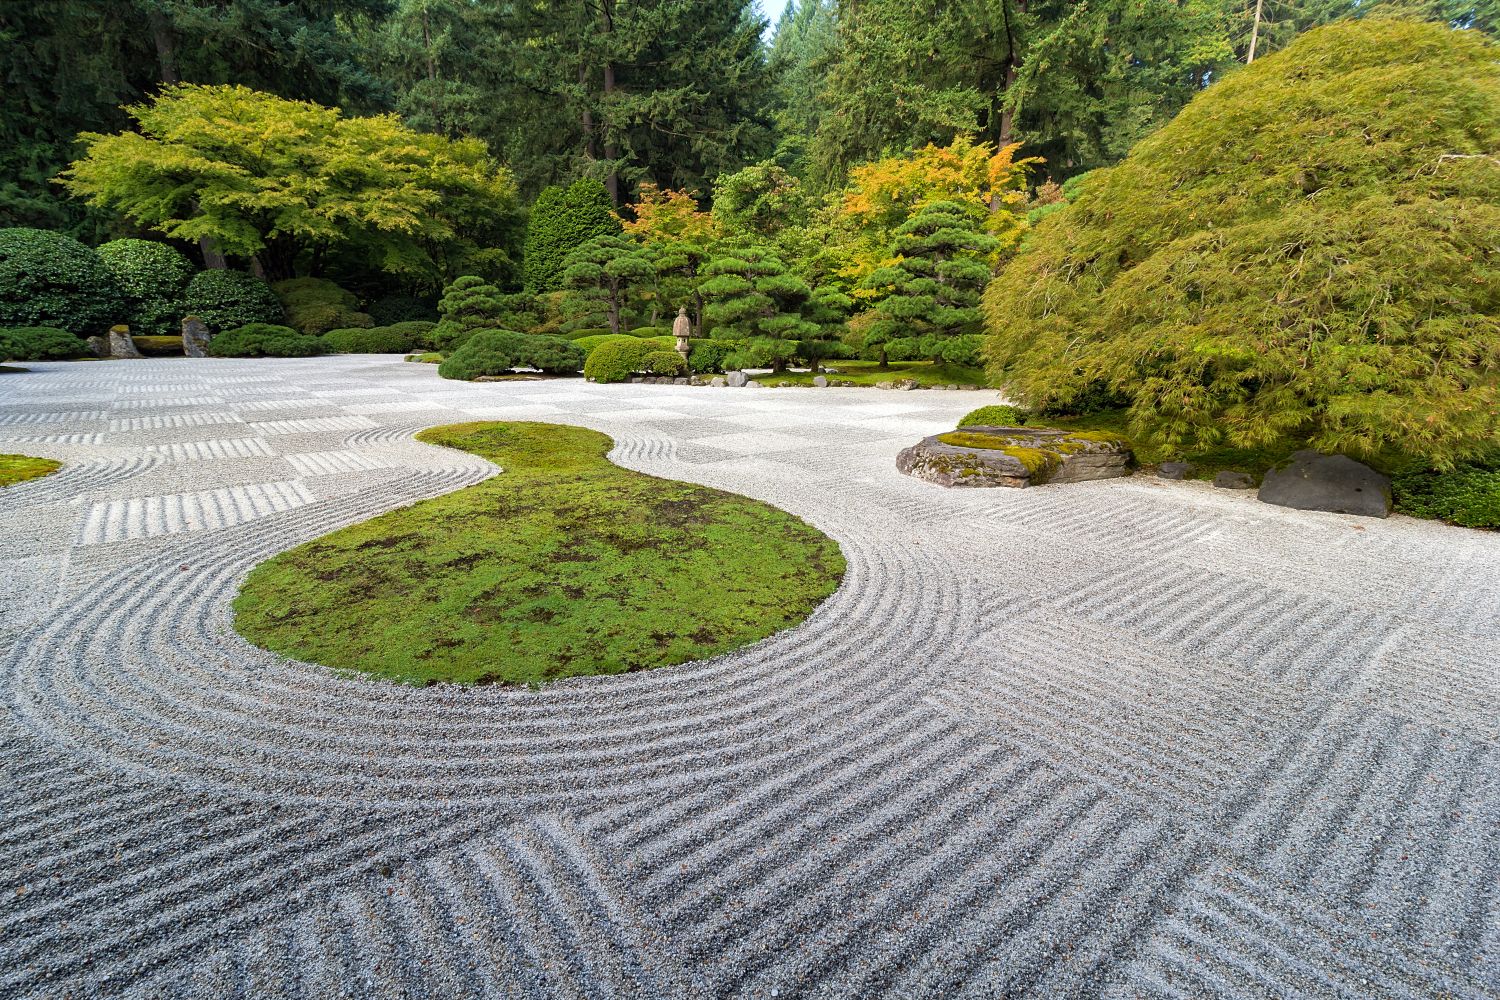 Premium Photo  Harmony of Bonsai in Zen Garden